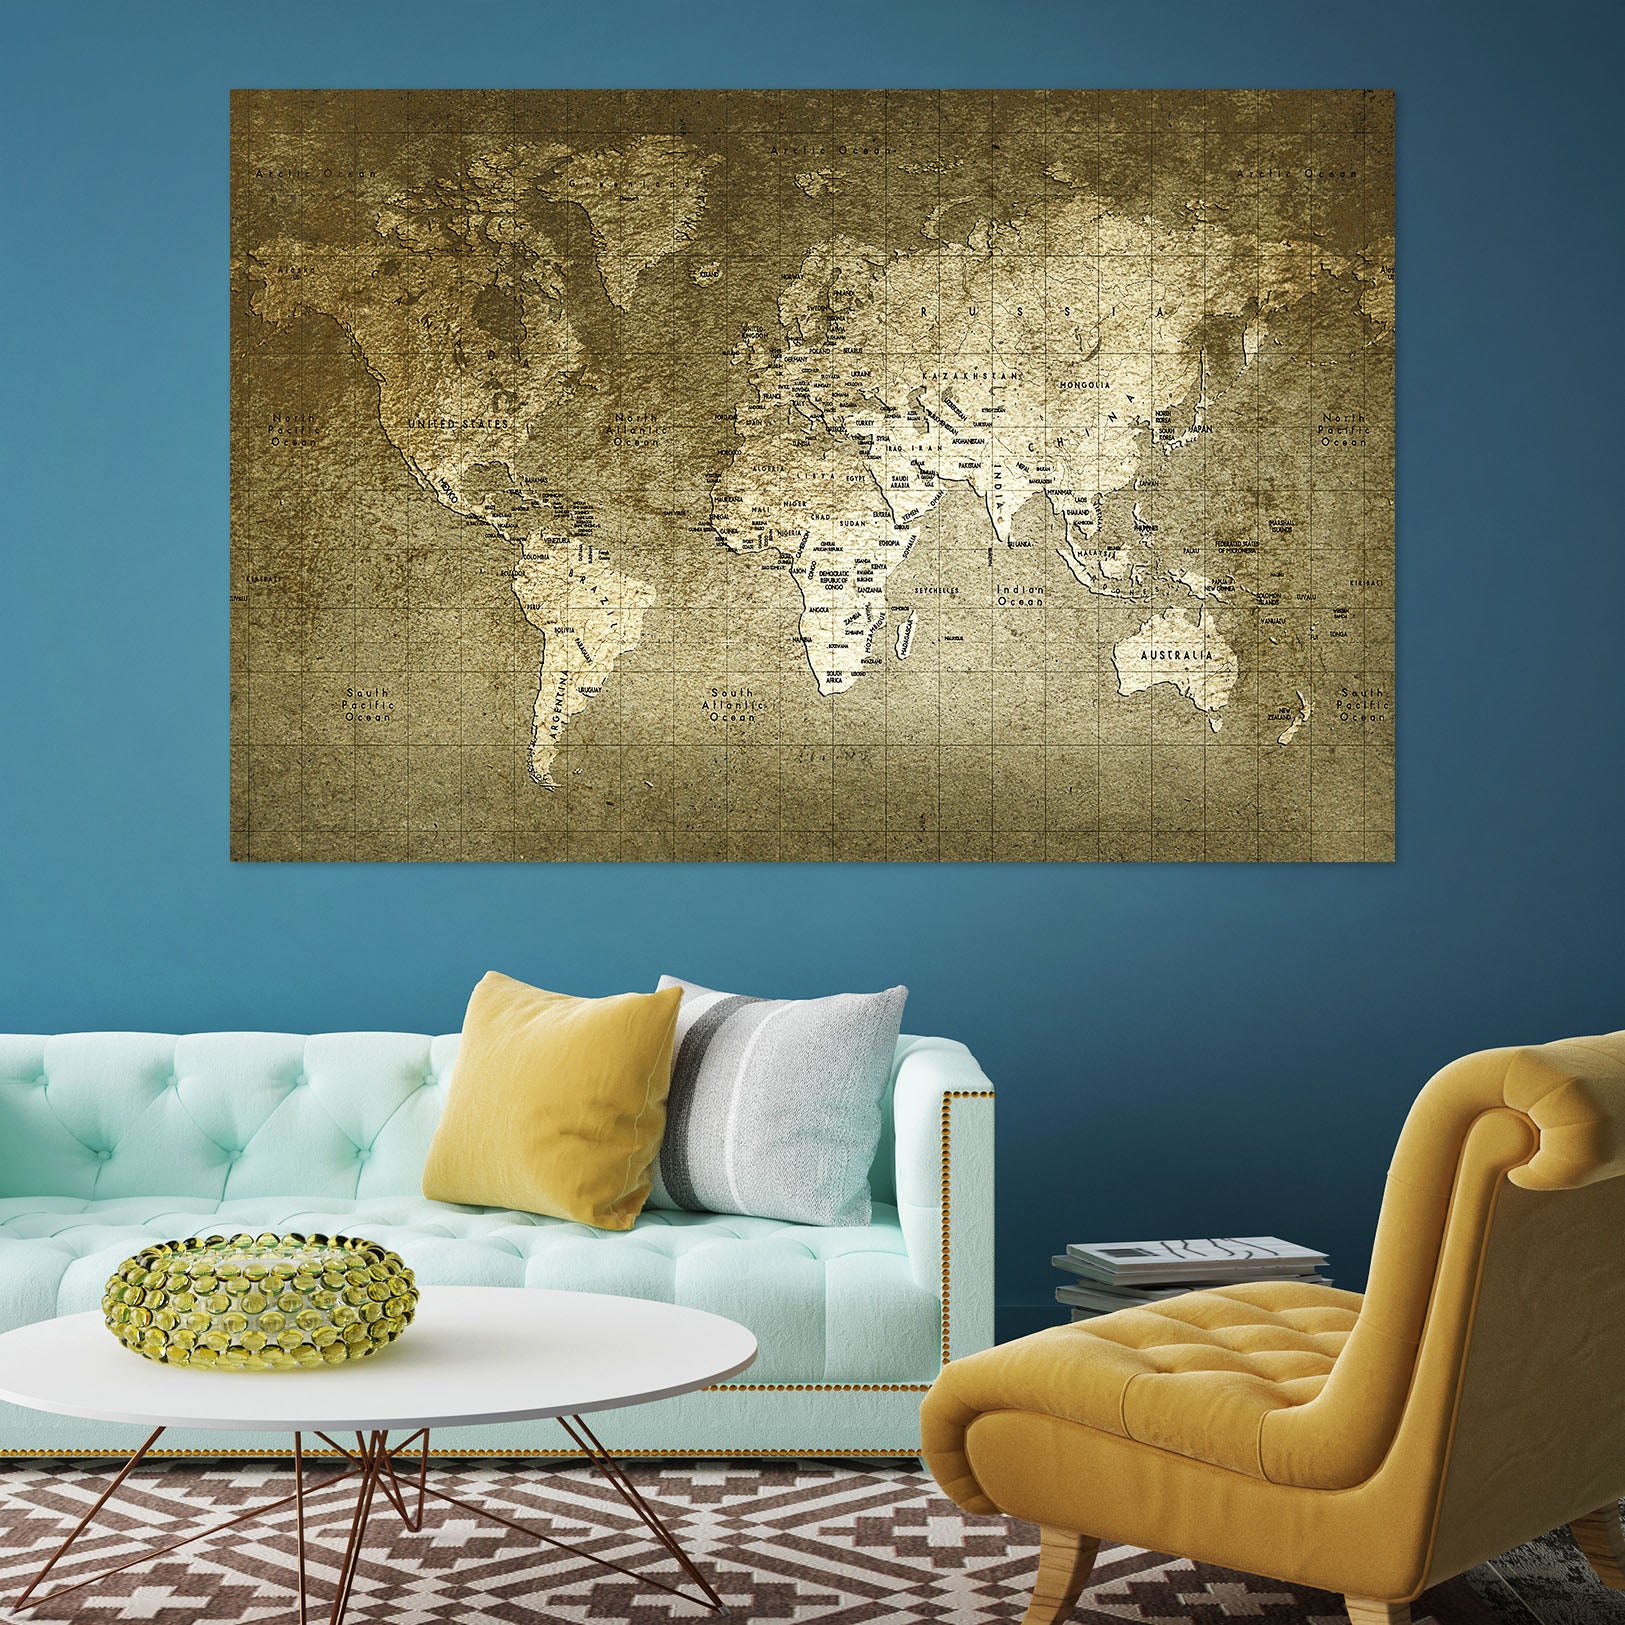 3D Seven Oceans 128 World Map Wall Sticker